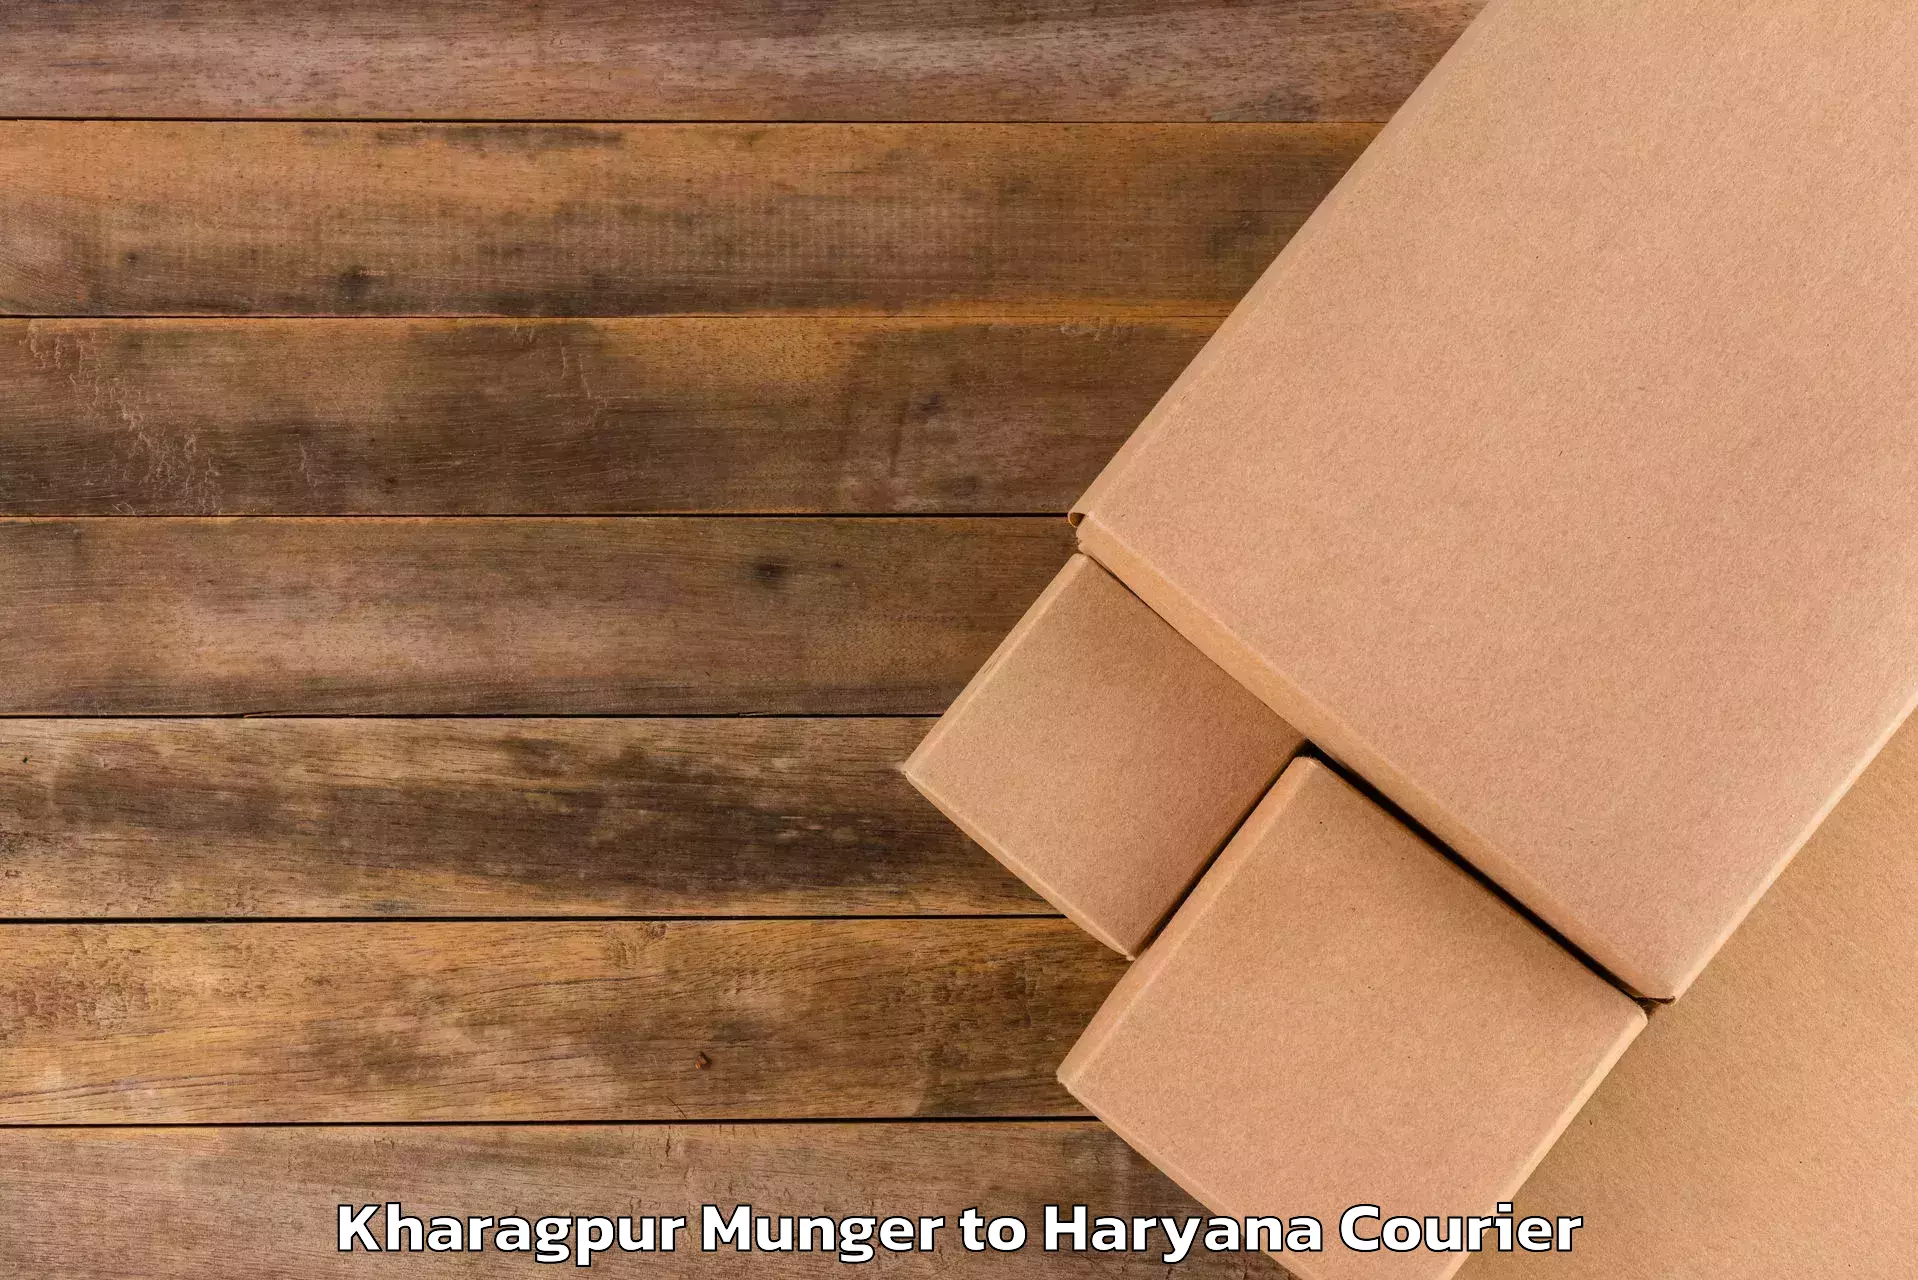 Luggage transport service Kharagpur Munger to Gurugram